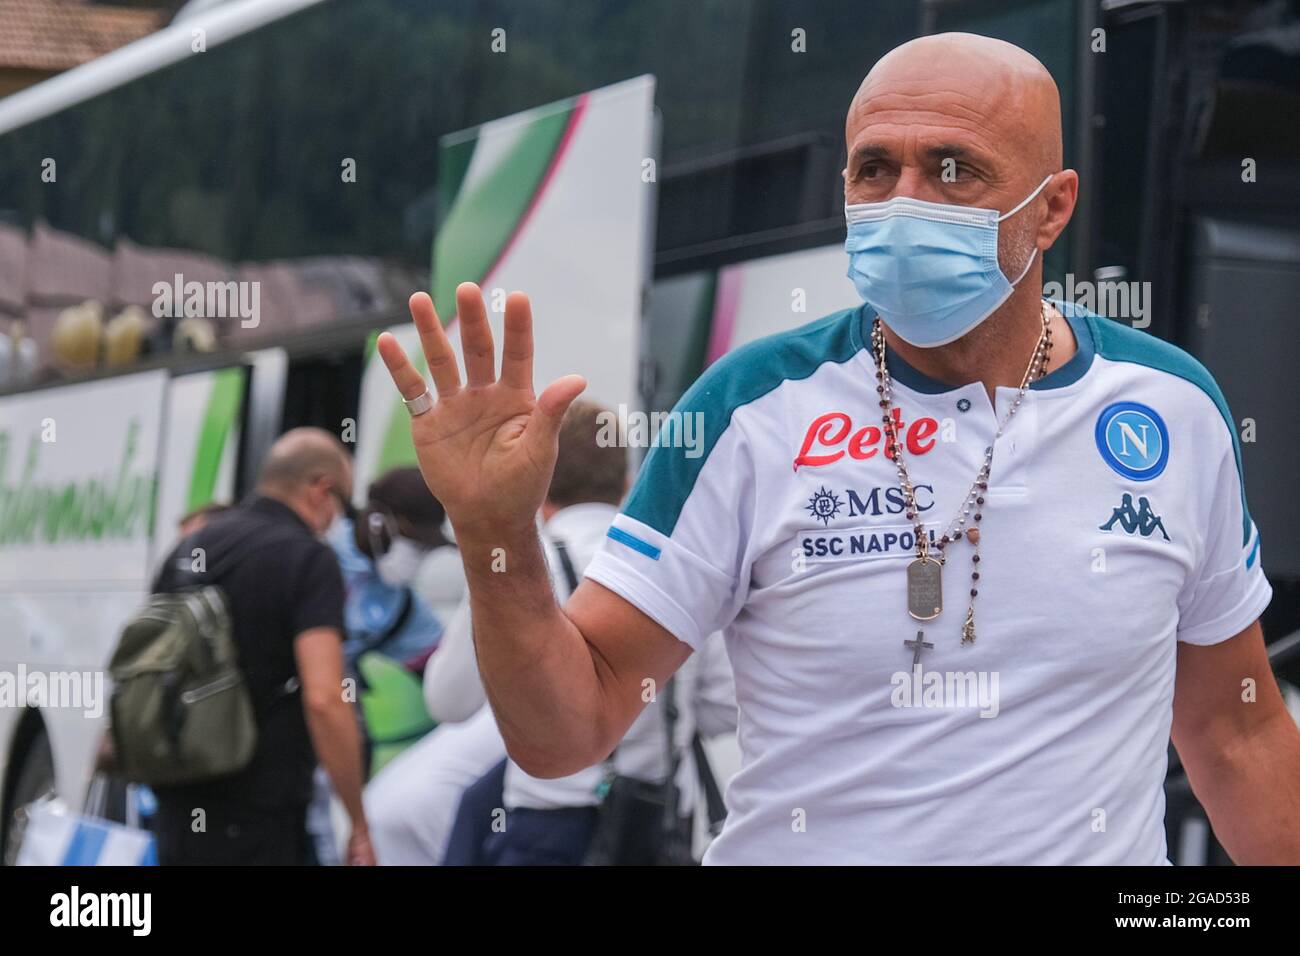 L'entraîneur italien de SSC Napoli Luciano Spalletti lors de l'arrivée du camp d'entraînement de pré-saison 2020-21 de ssc napoli à val di Sole, dans le trentin, dimaro folgarida Banque D'Images